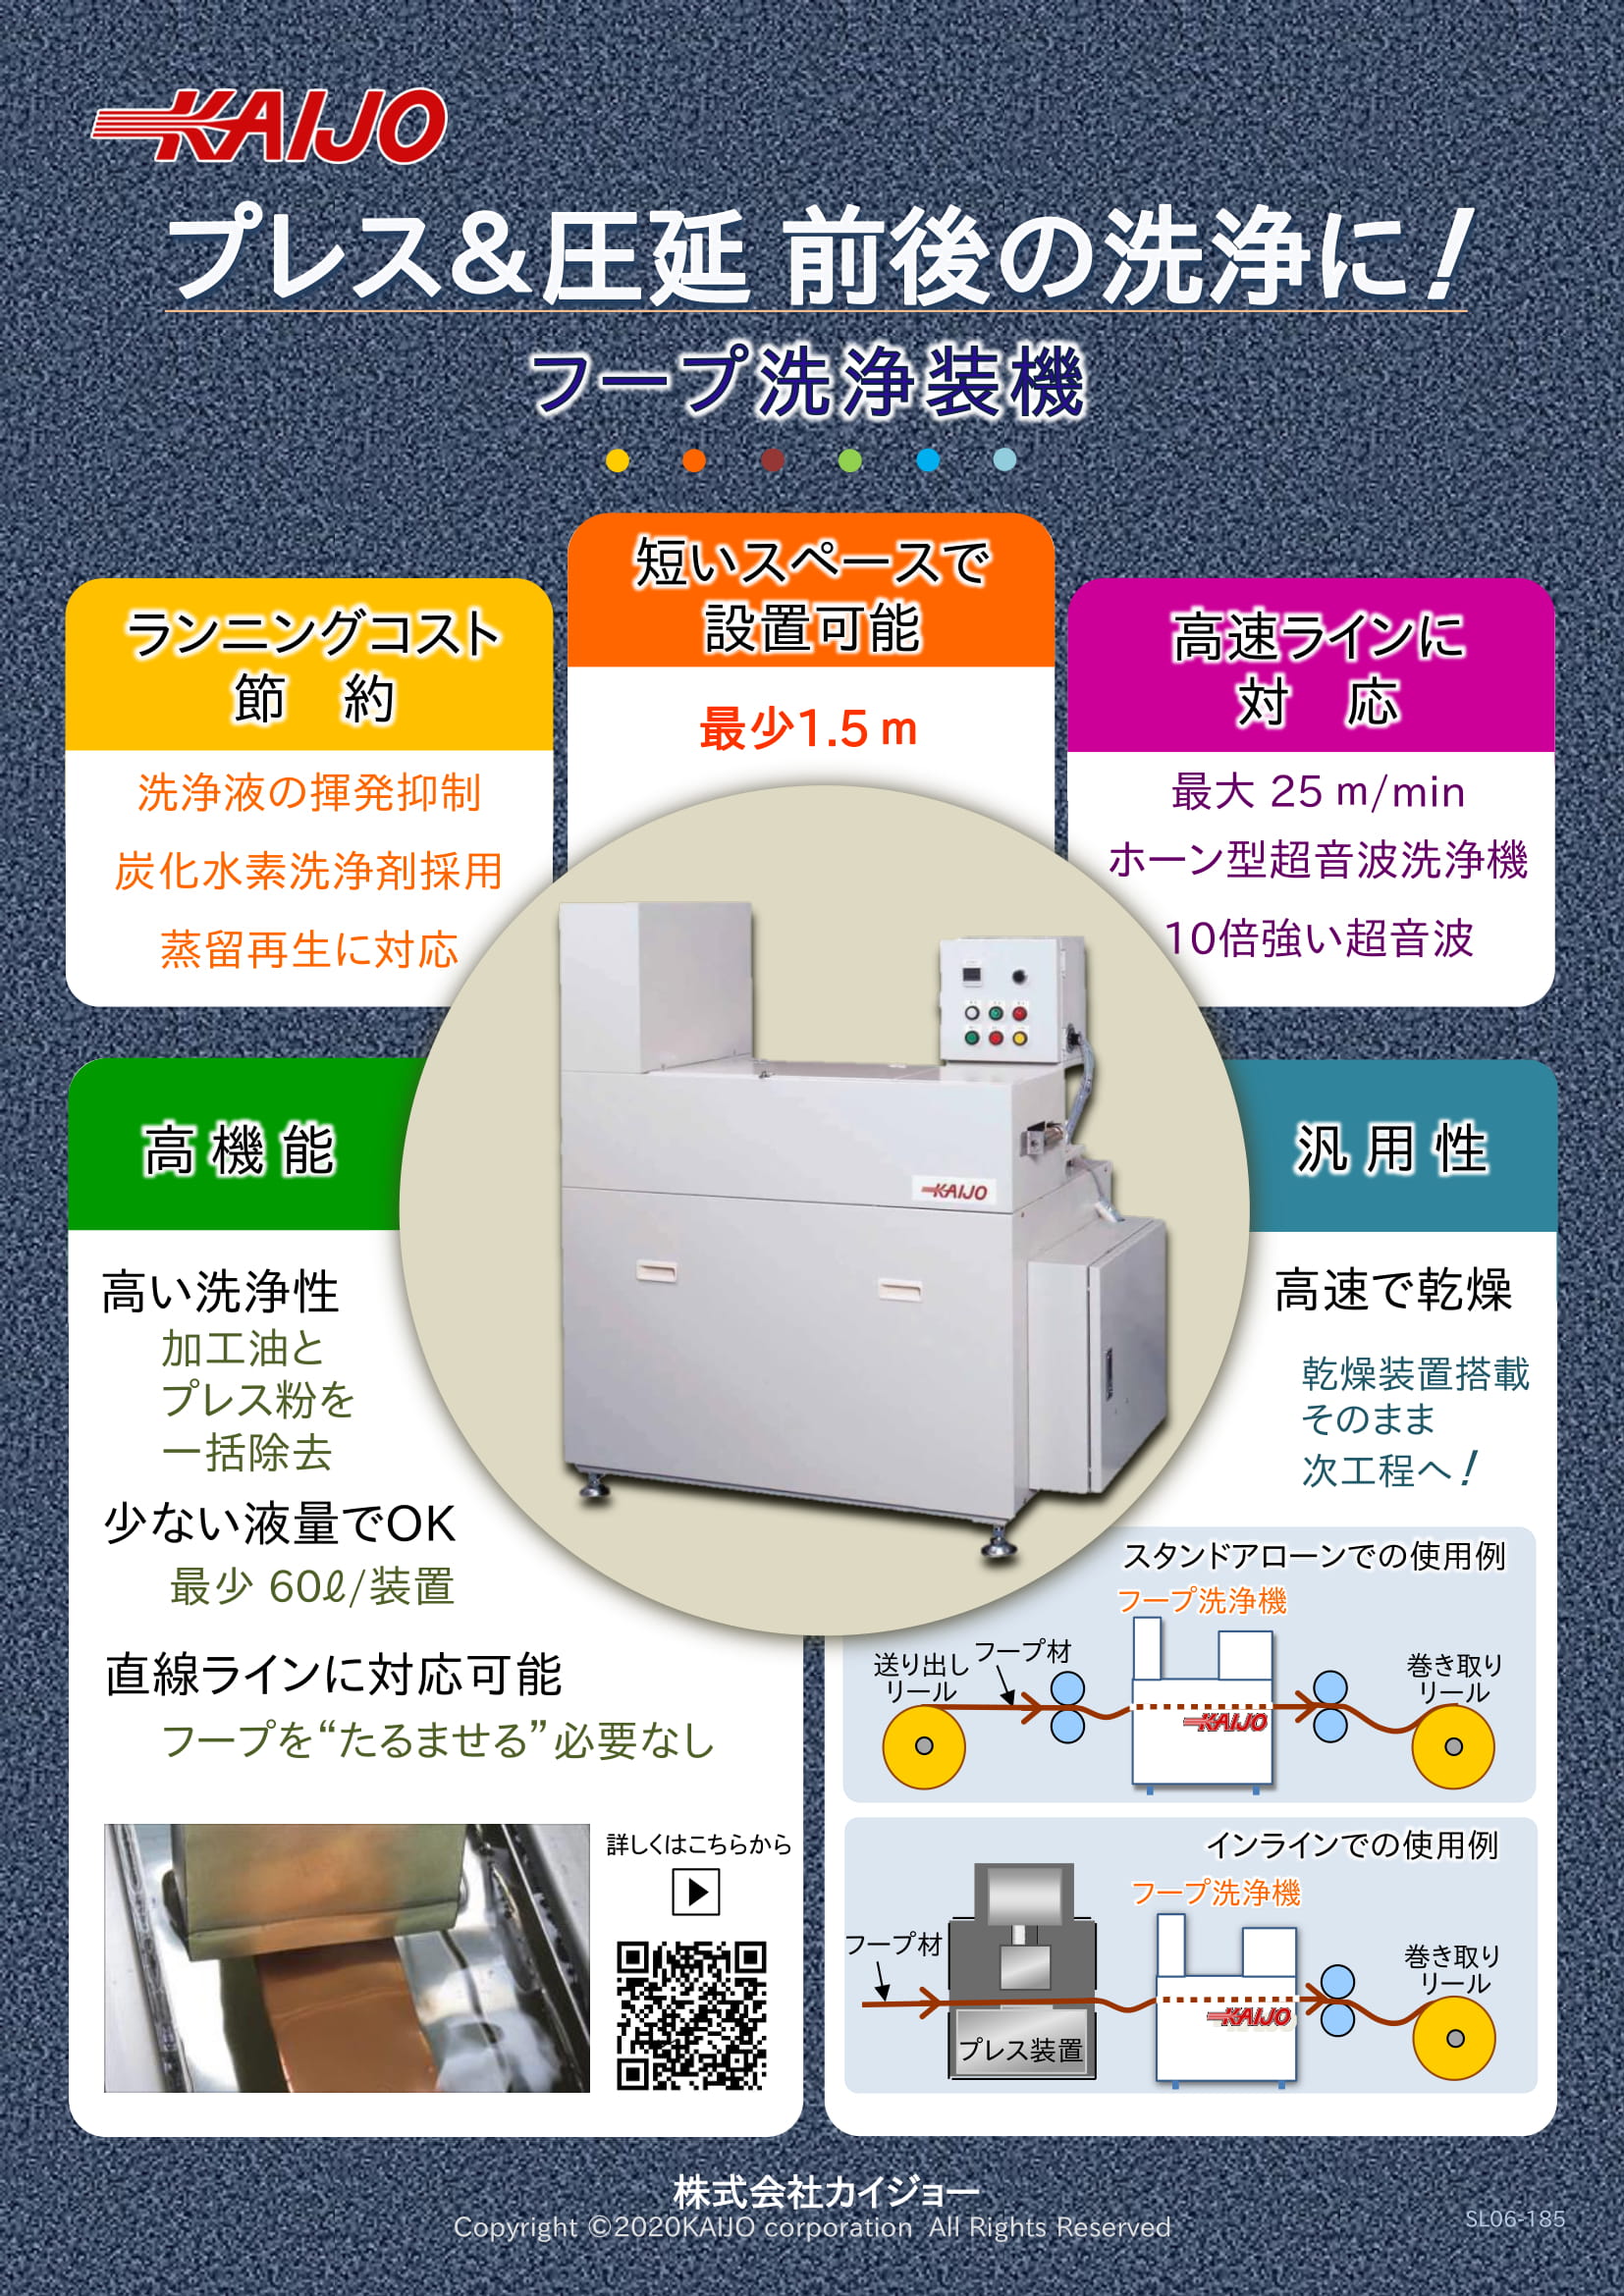 フープ洗浄機カタログ表紙